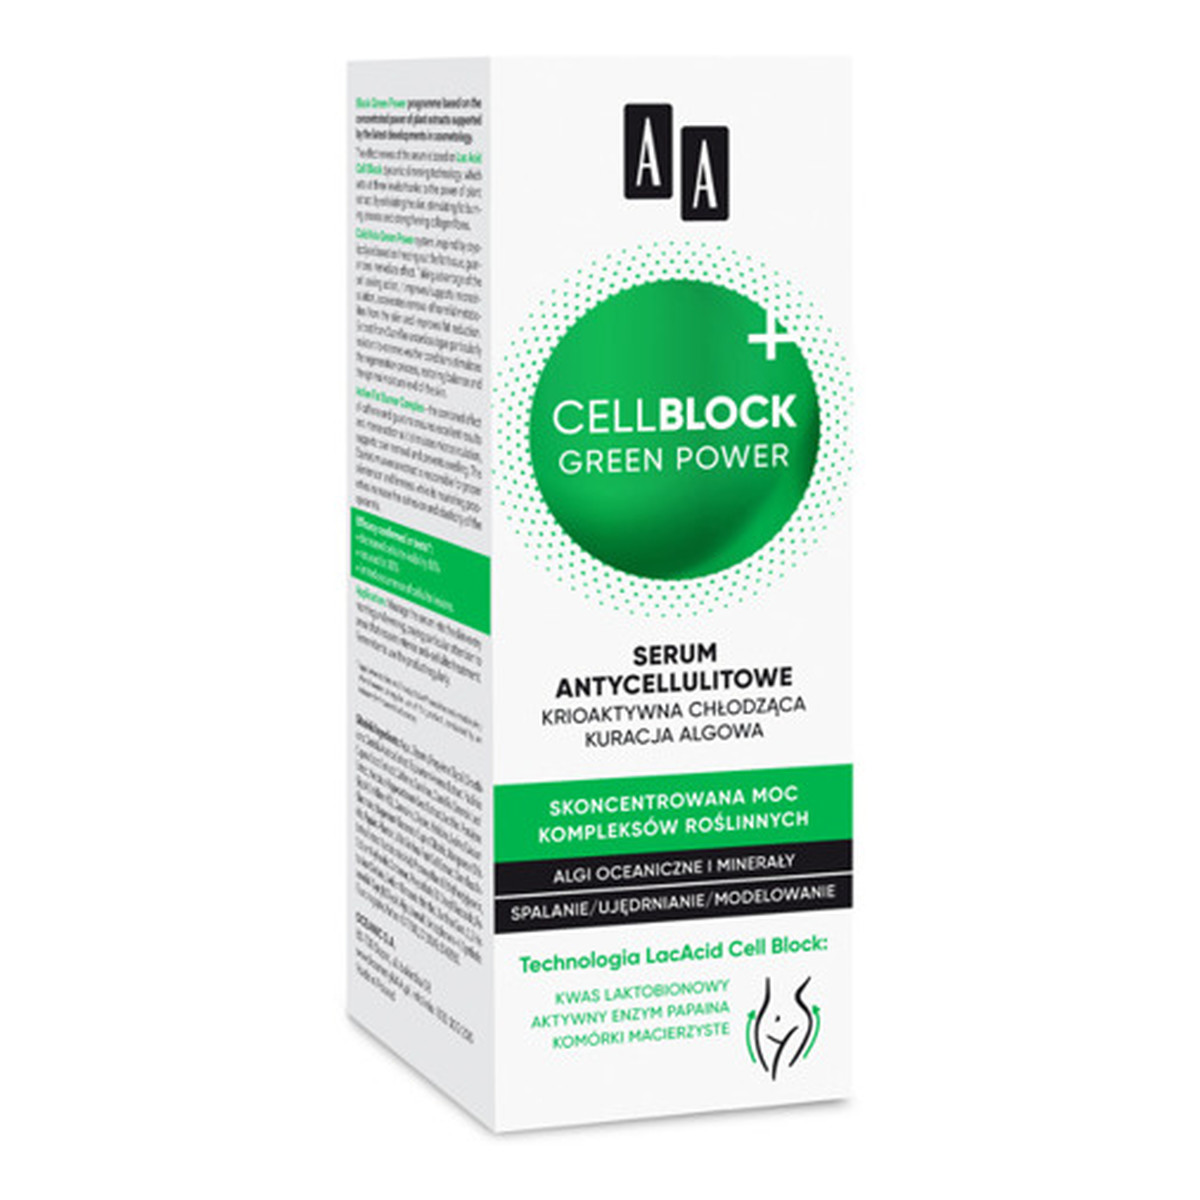 AA Cell Block Green Power Serum Antycellulitowe Krioaktywna chłodząca kuracja algowa 200ml